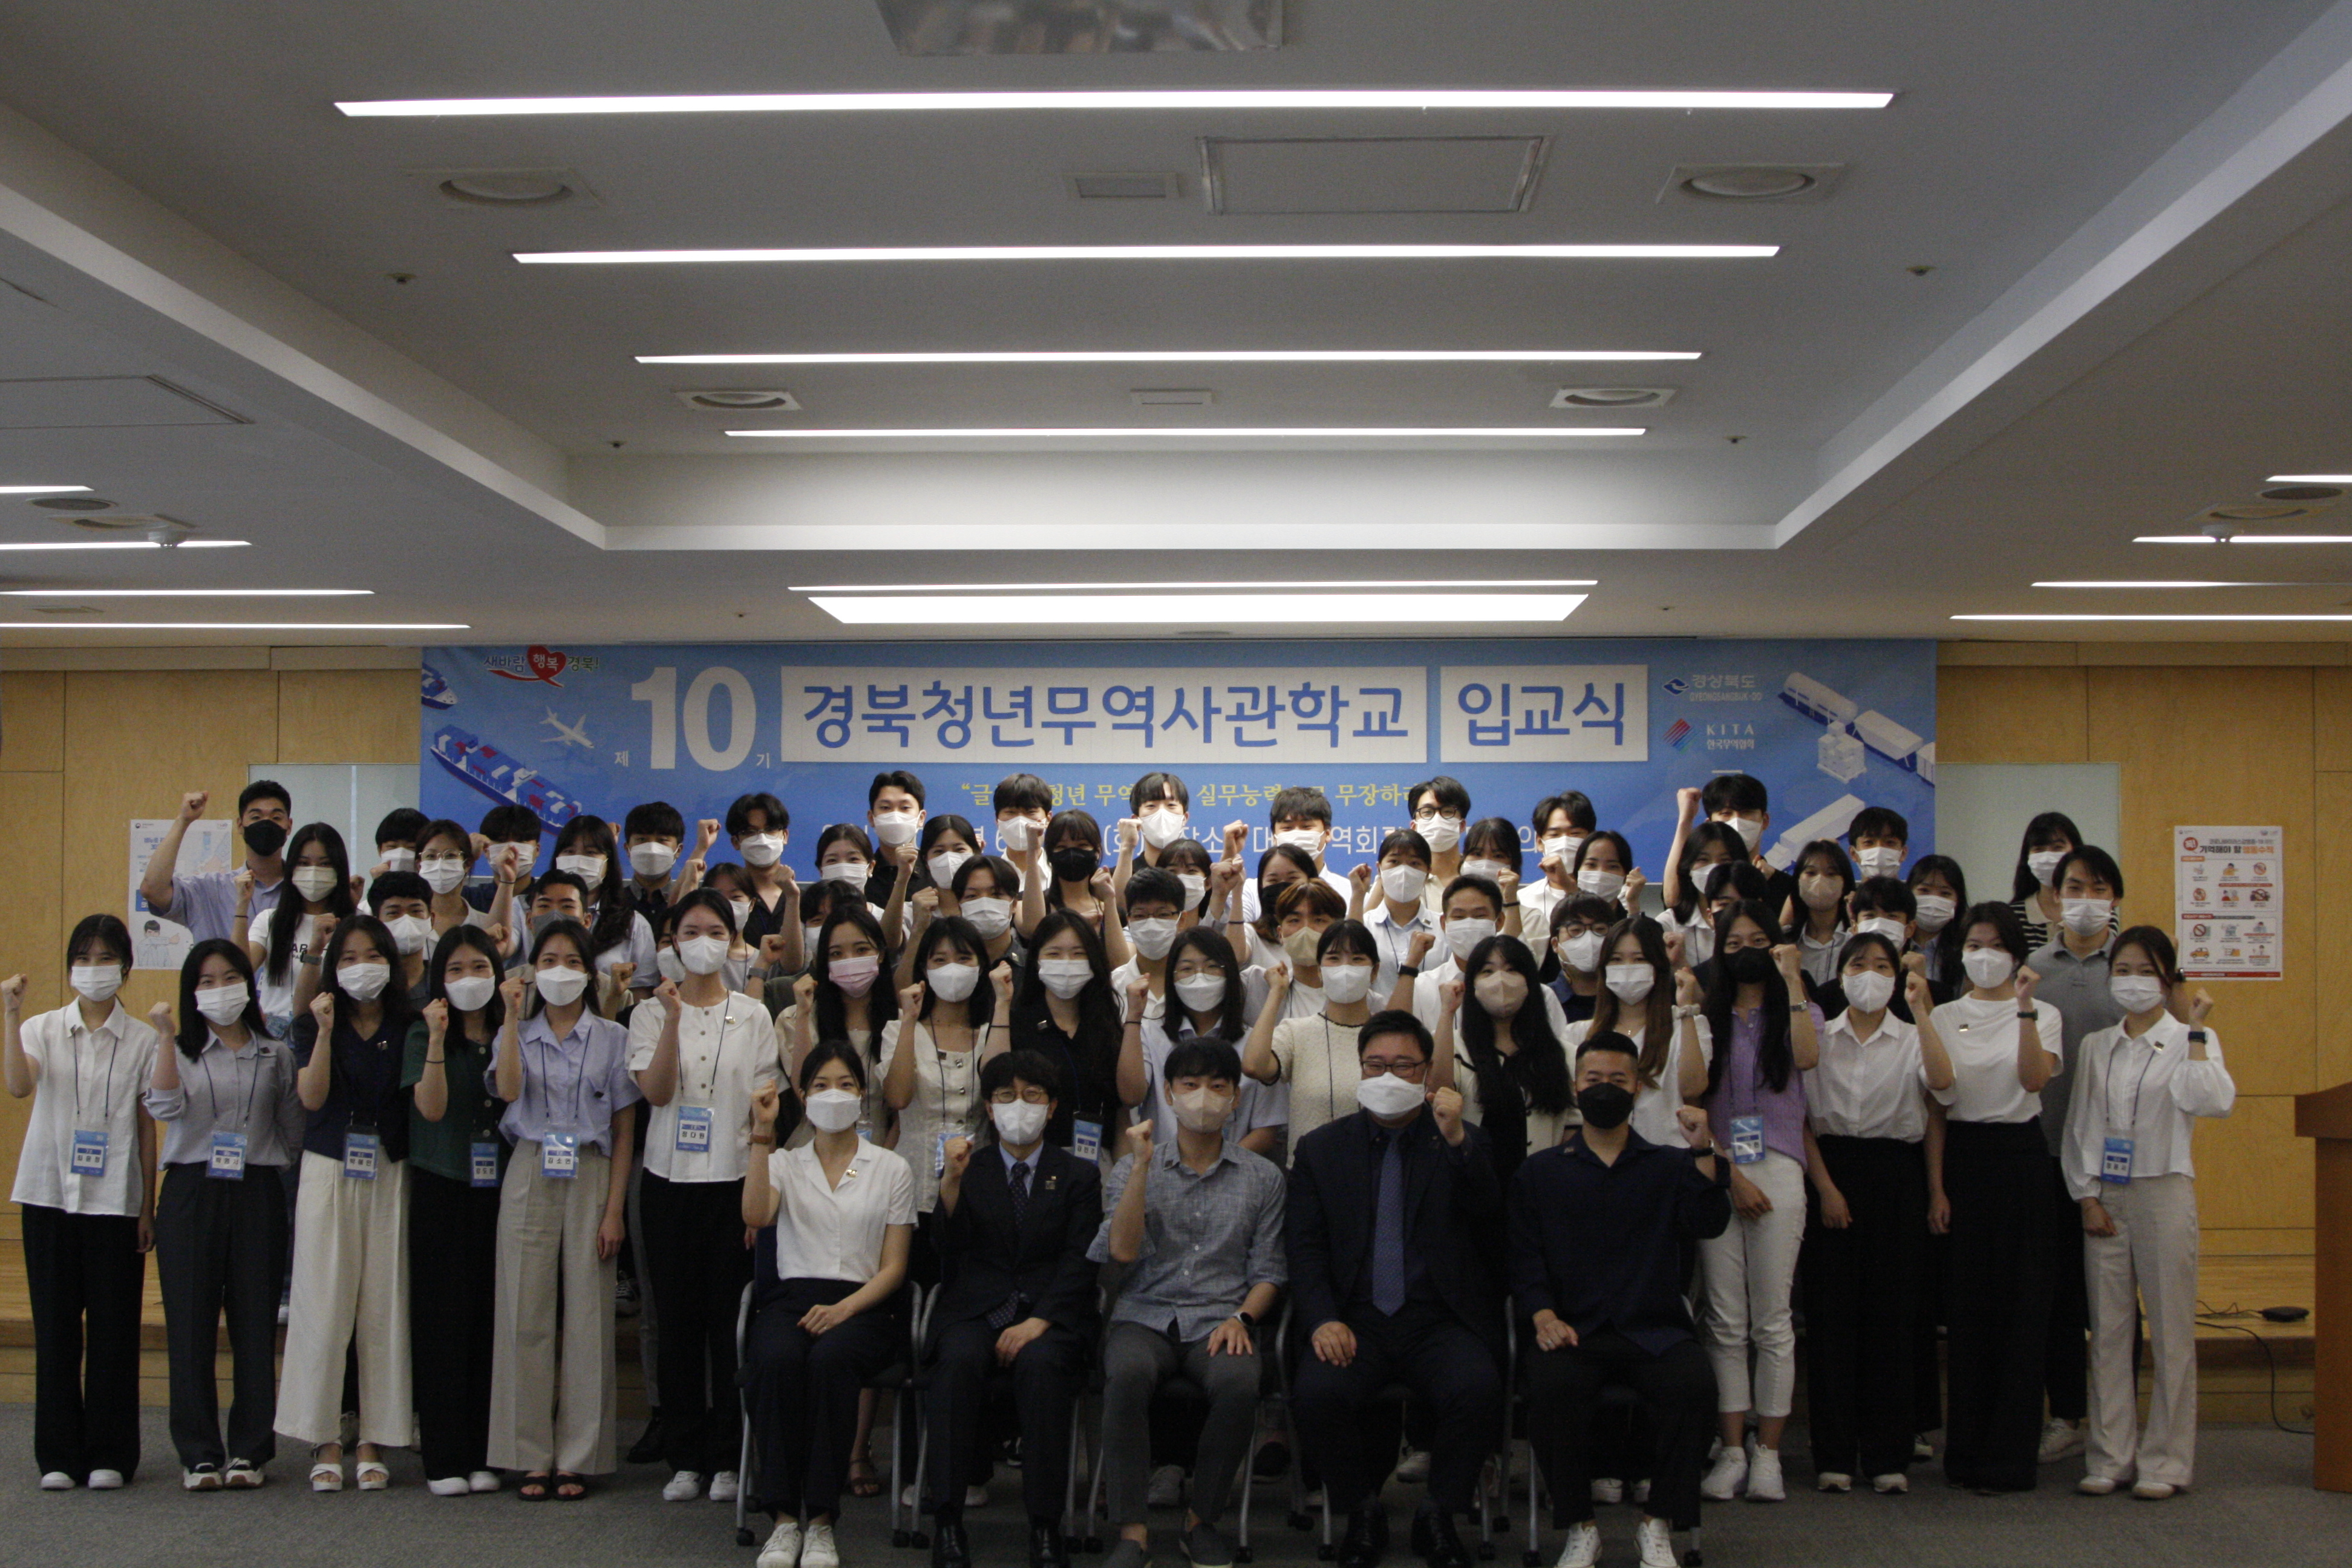 지난해 열린 제10기 경북청년무역사관학교 입교식 참석자들이 파이팅을 외치며 기념 촬영을 하고 있다. 경북도 제공